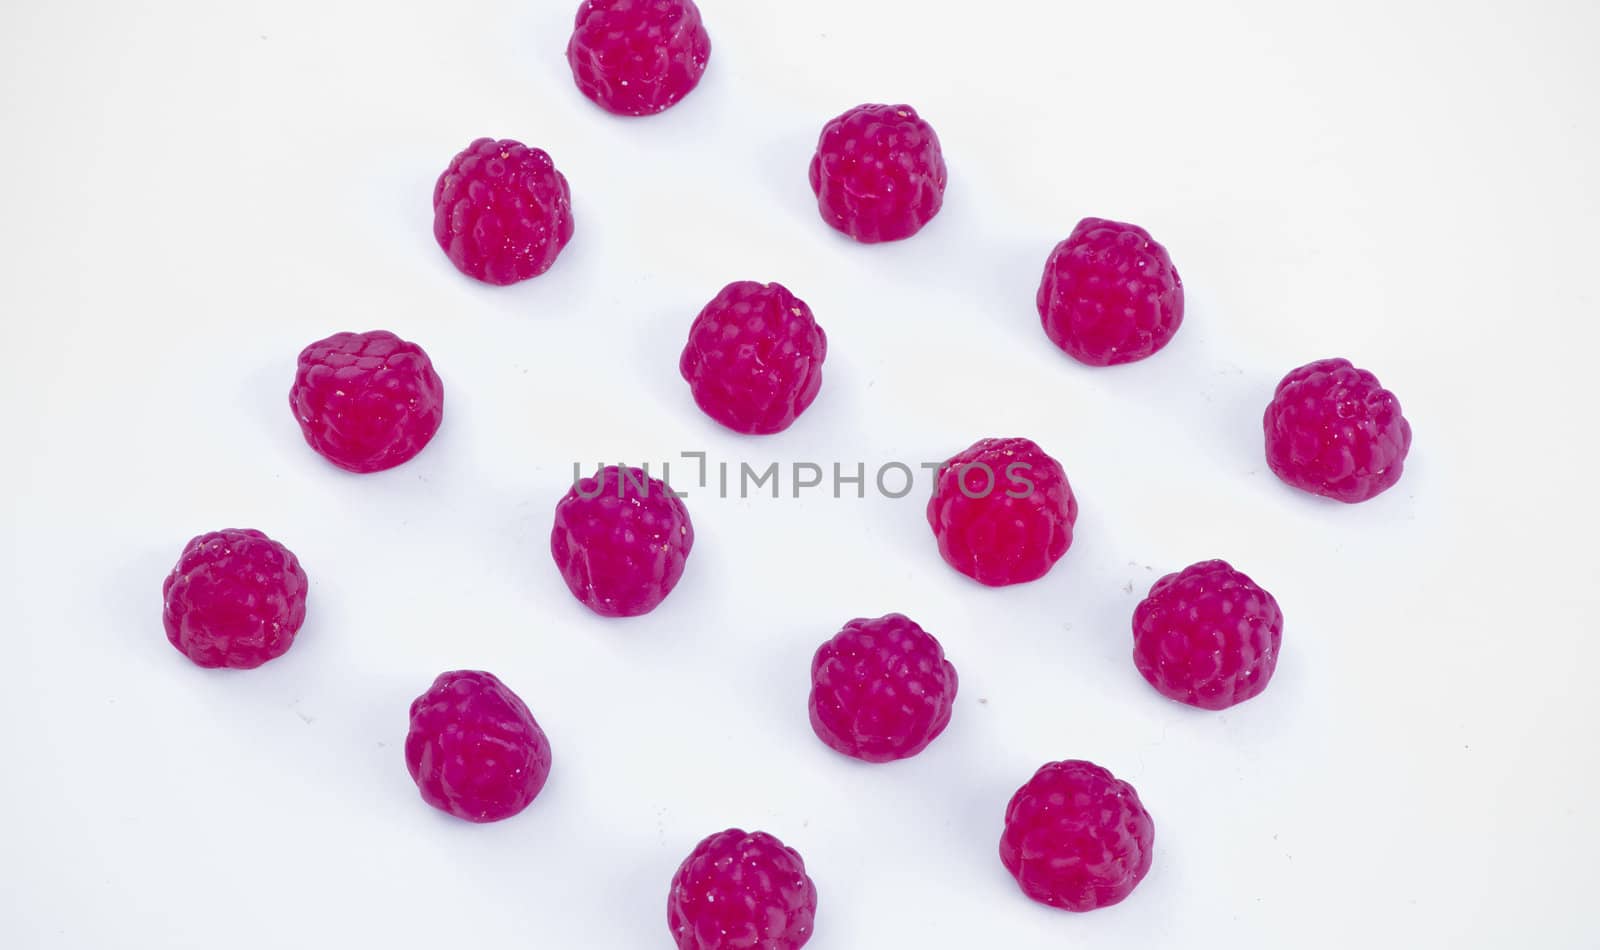 Blackberry jelly. Fruit snacks